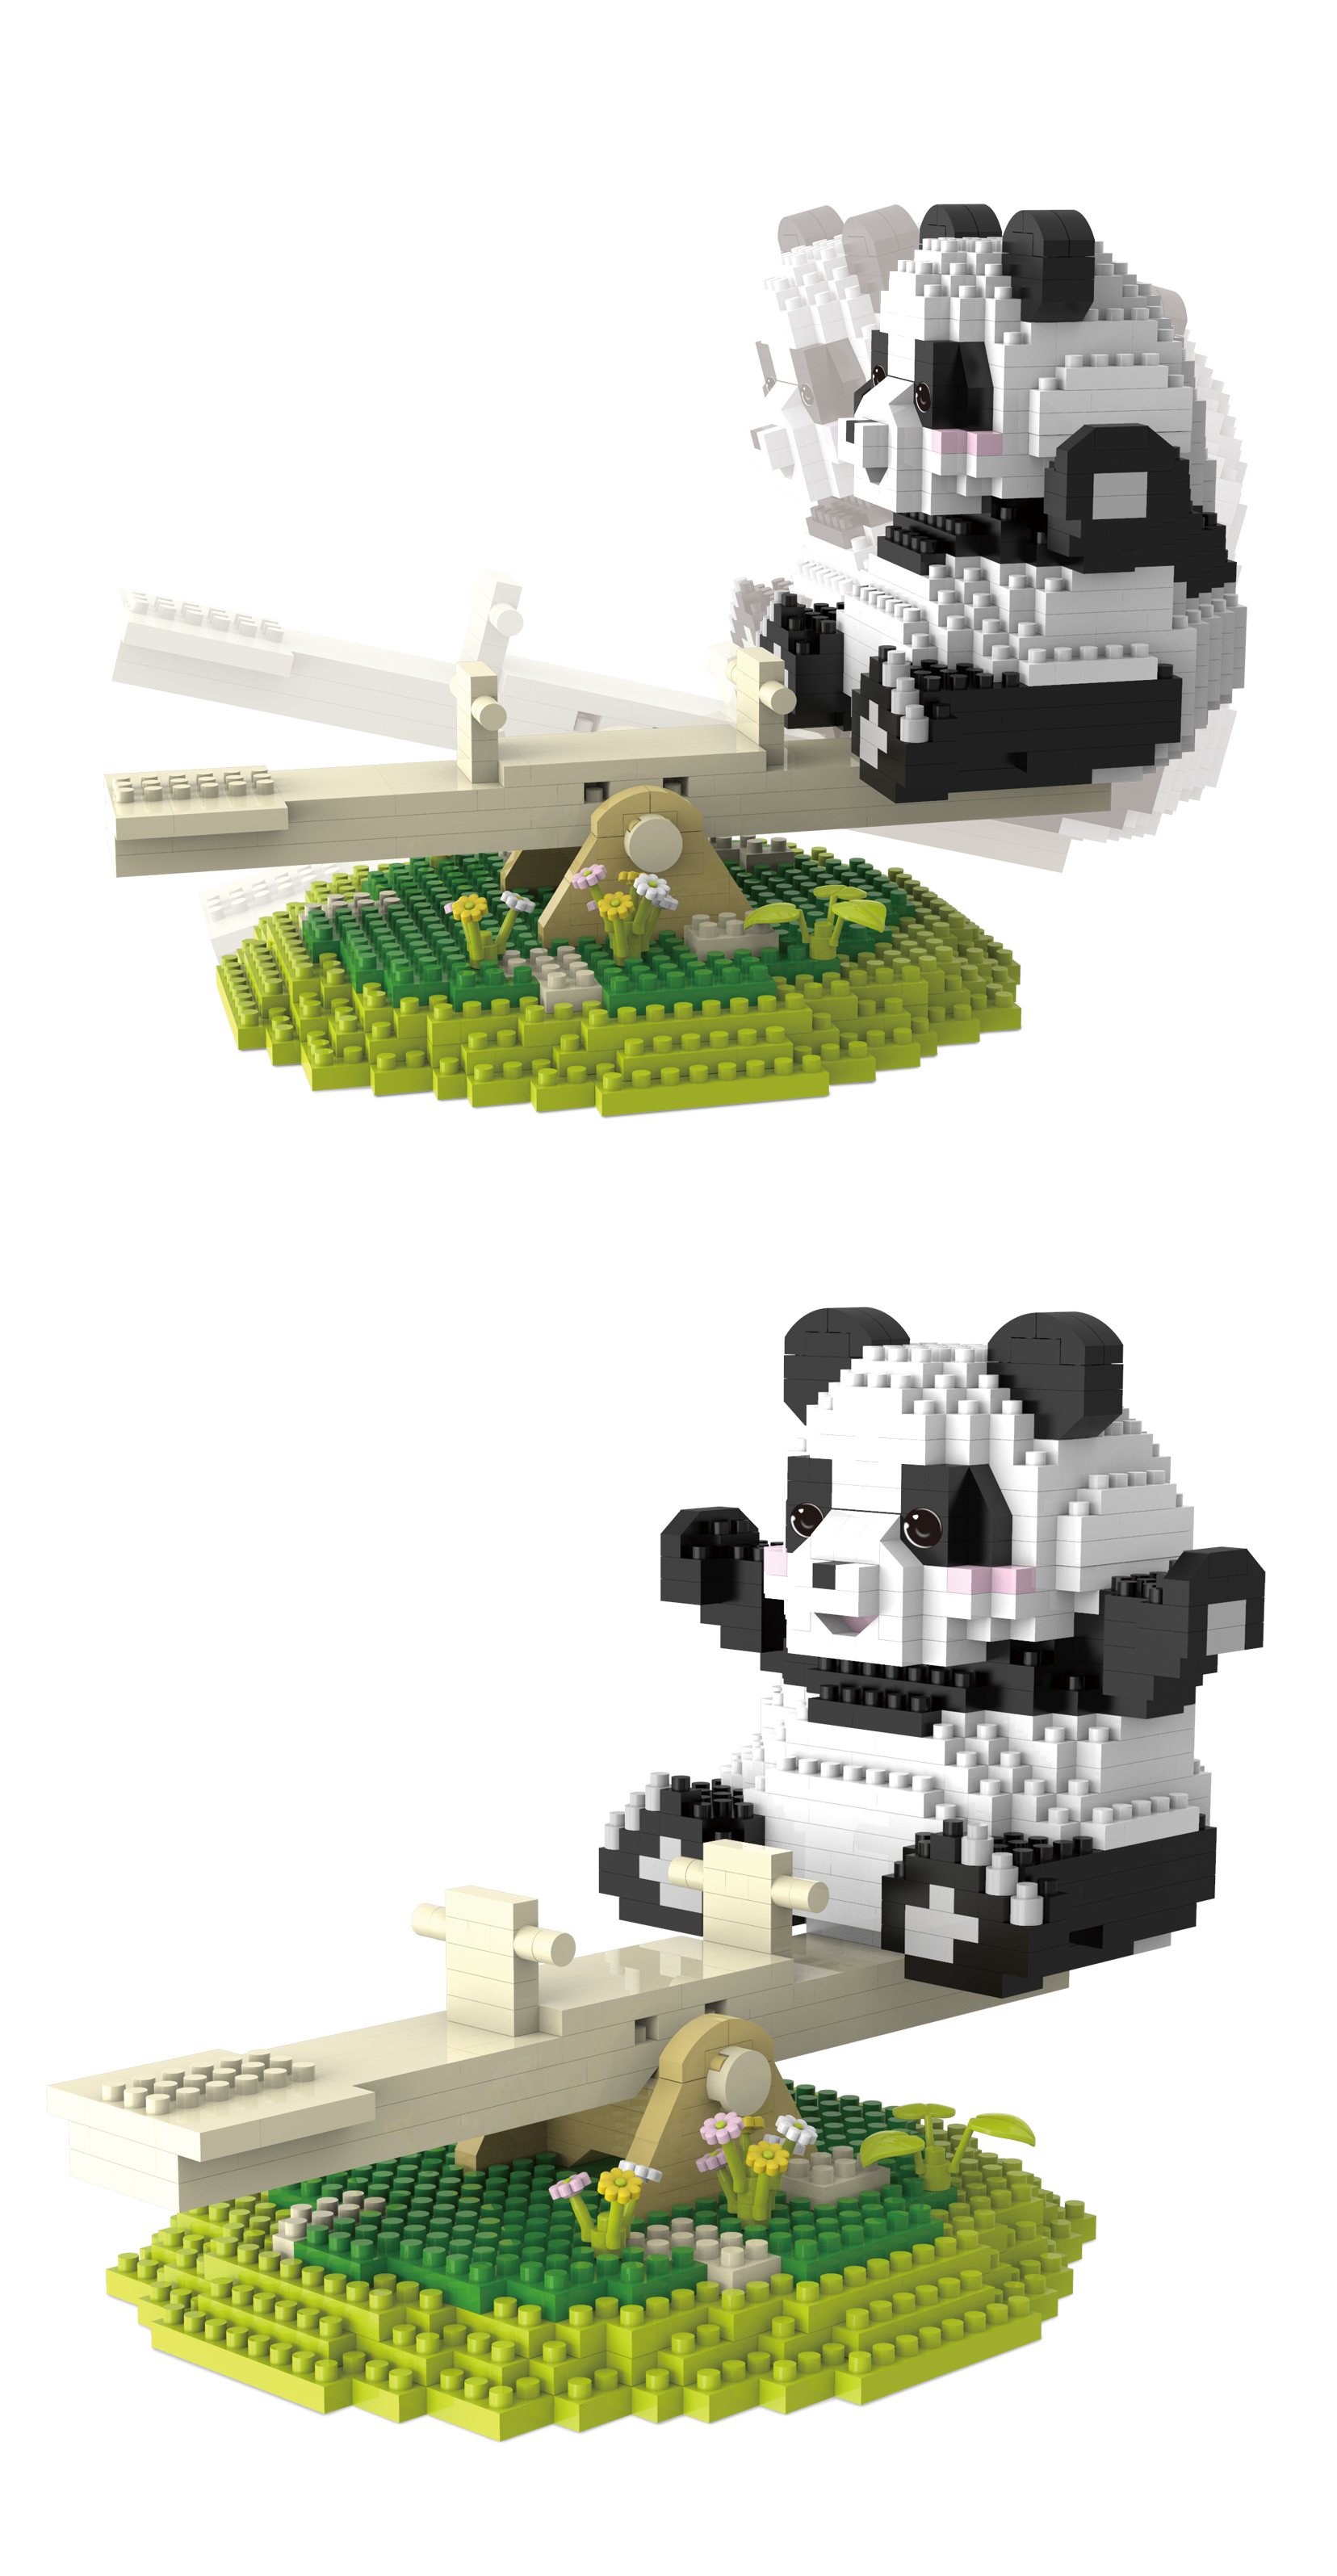 Конструктор 3Д из миниблоков RTOY Веселая панда, подвижные элементы 100 дет. конструктор 3d из миниблоков rtoy любимые животные панда кушает бамбук 920 эл jm20814